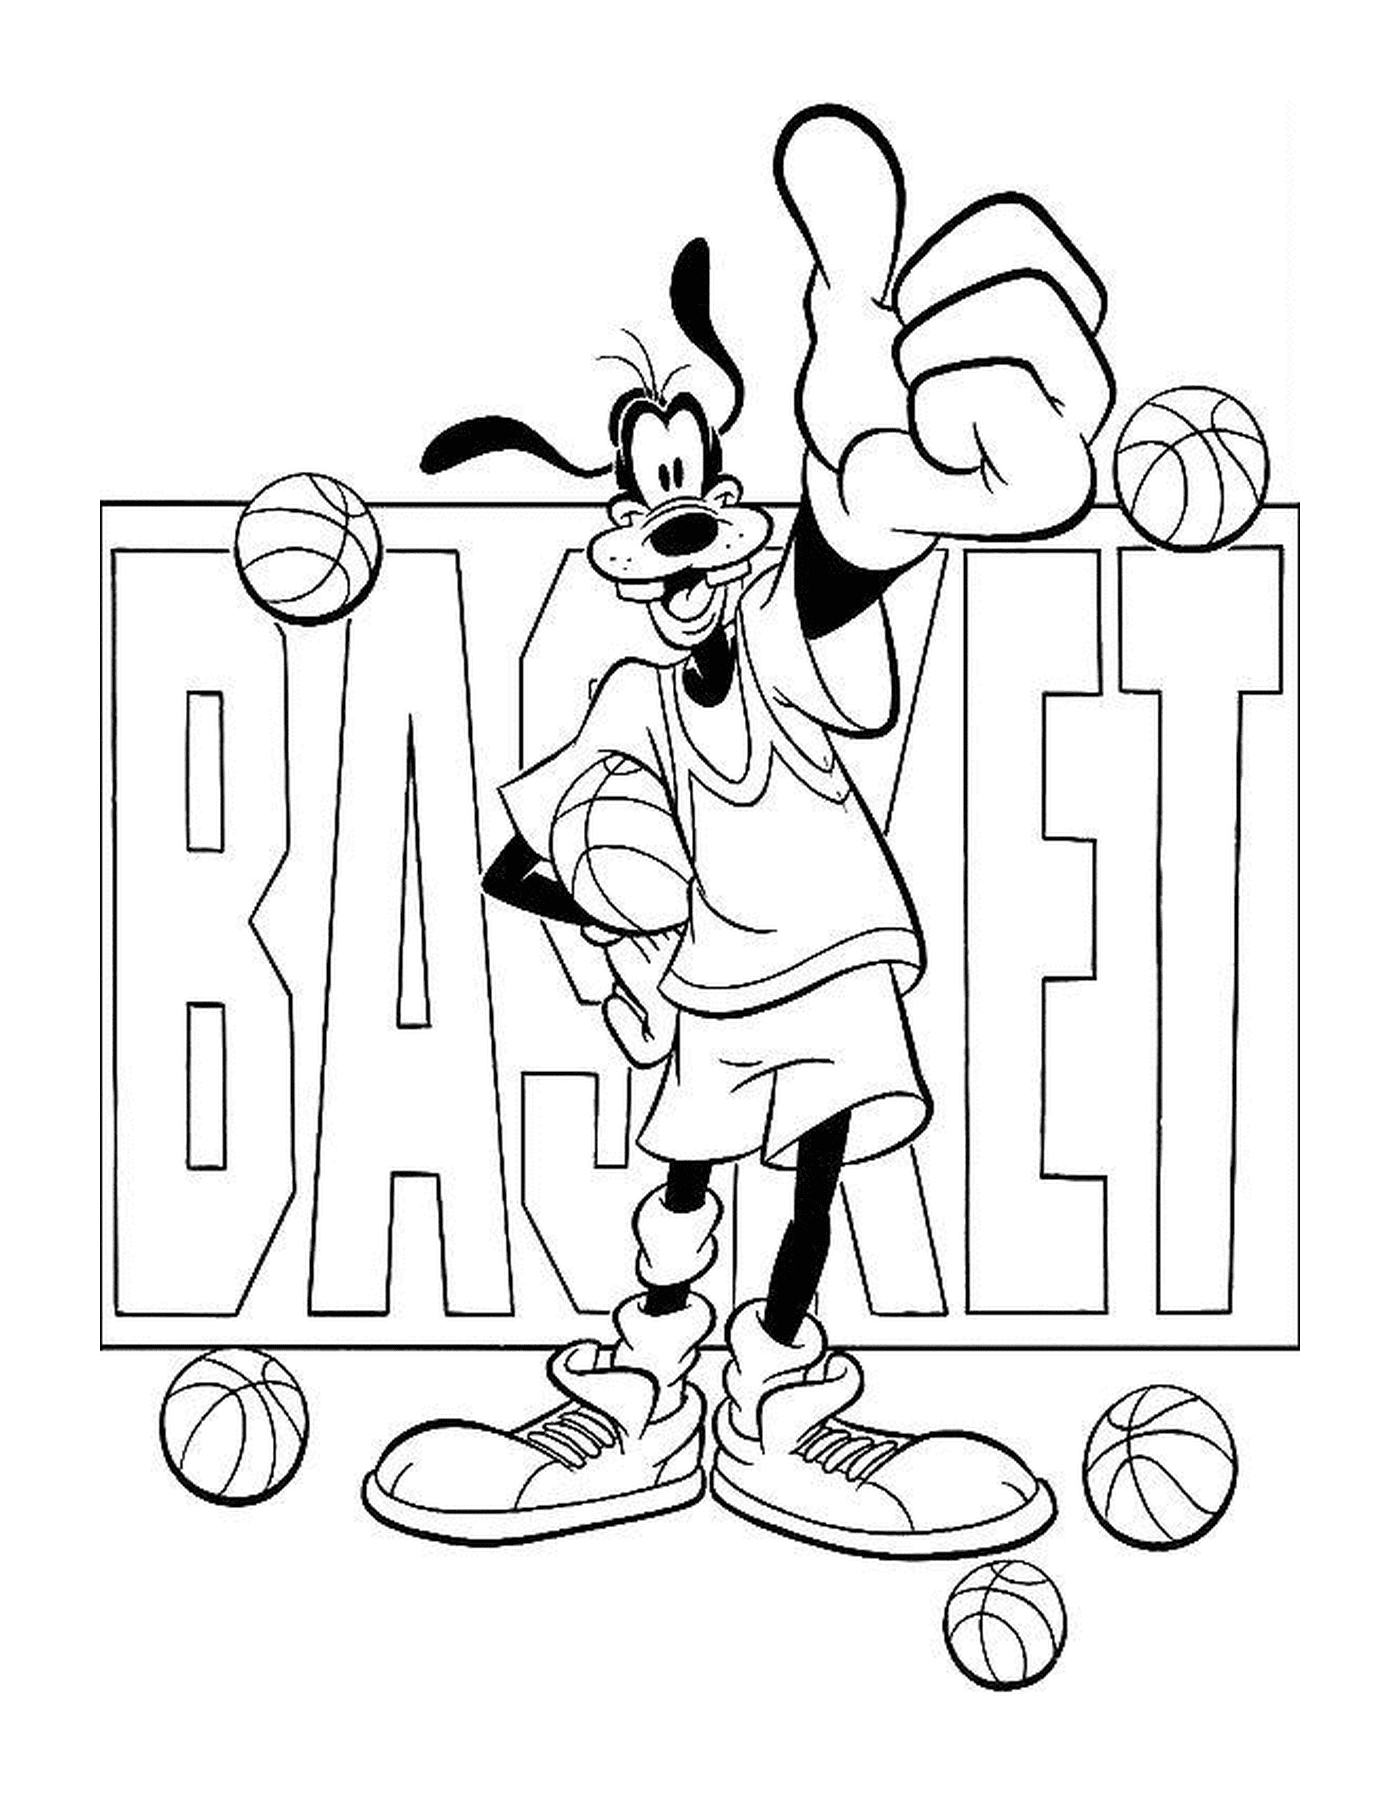  A Dingo le gusta el baloncesto y sostiene una pelota delante de la palabra canasta 